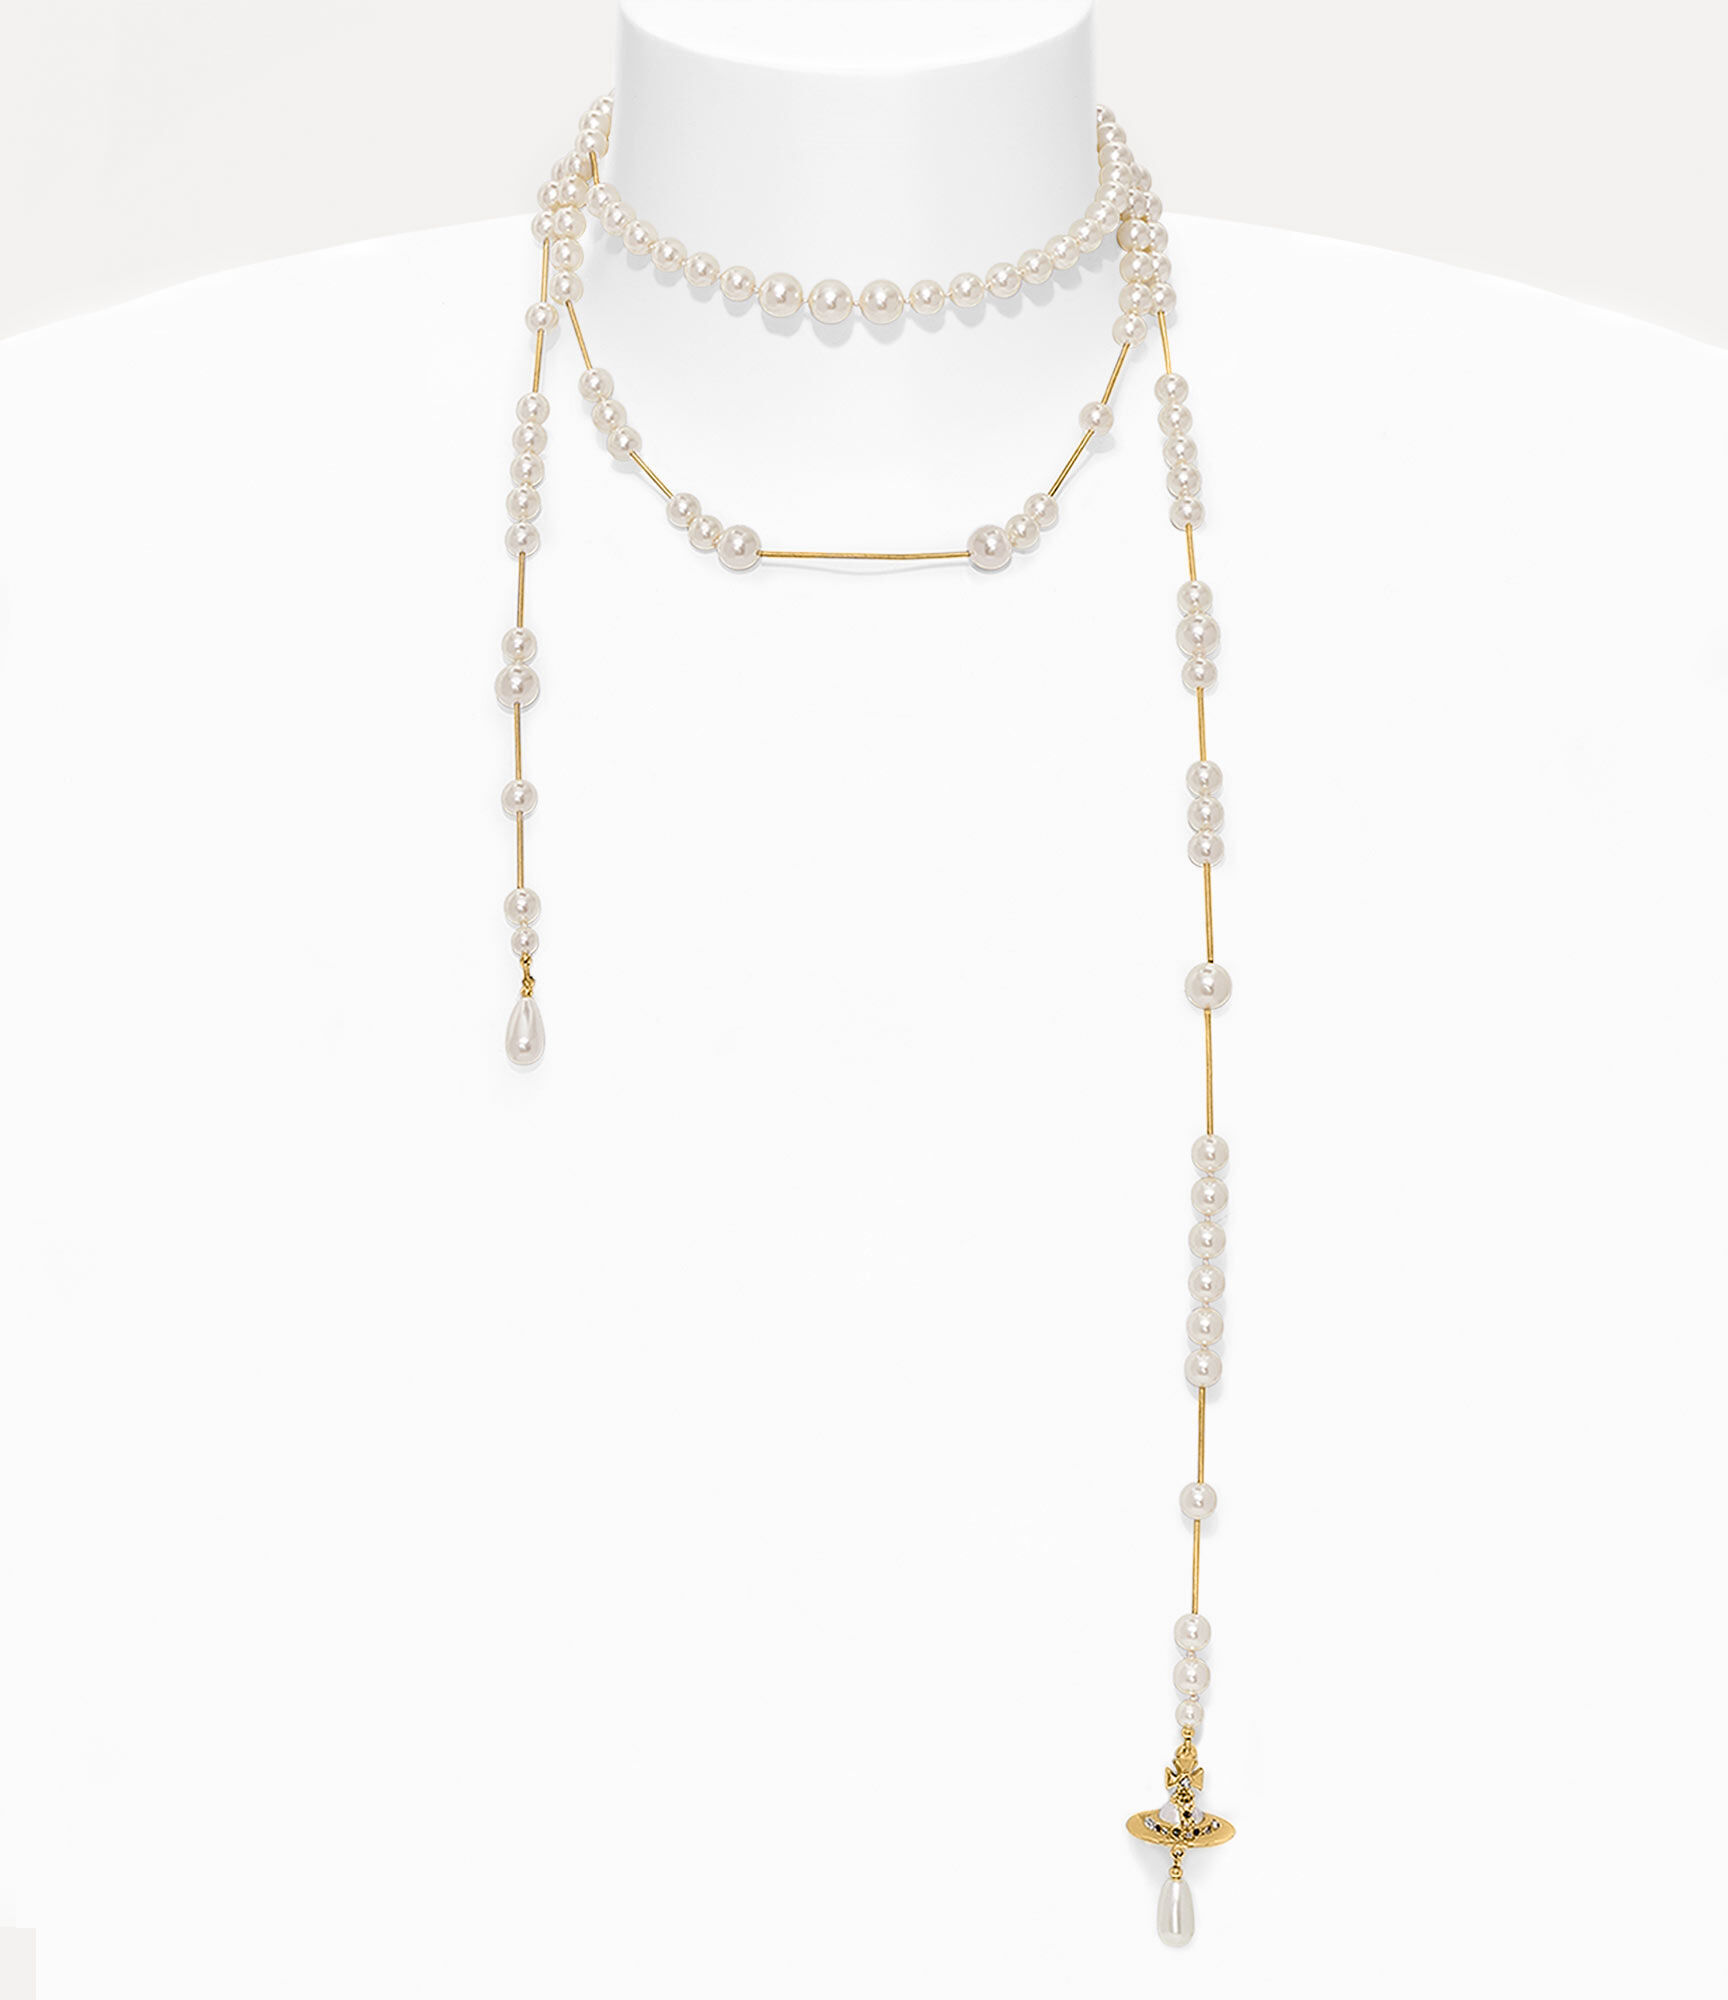 Broken pearl necklace